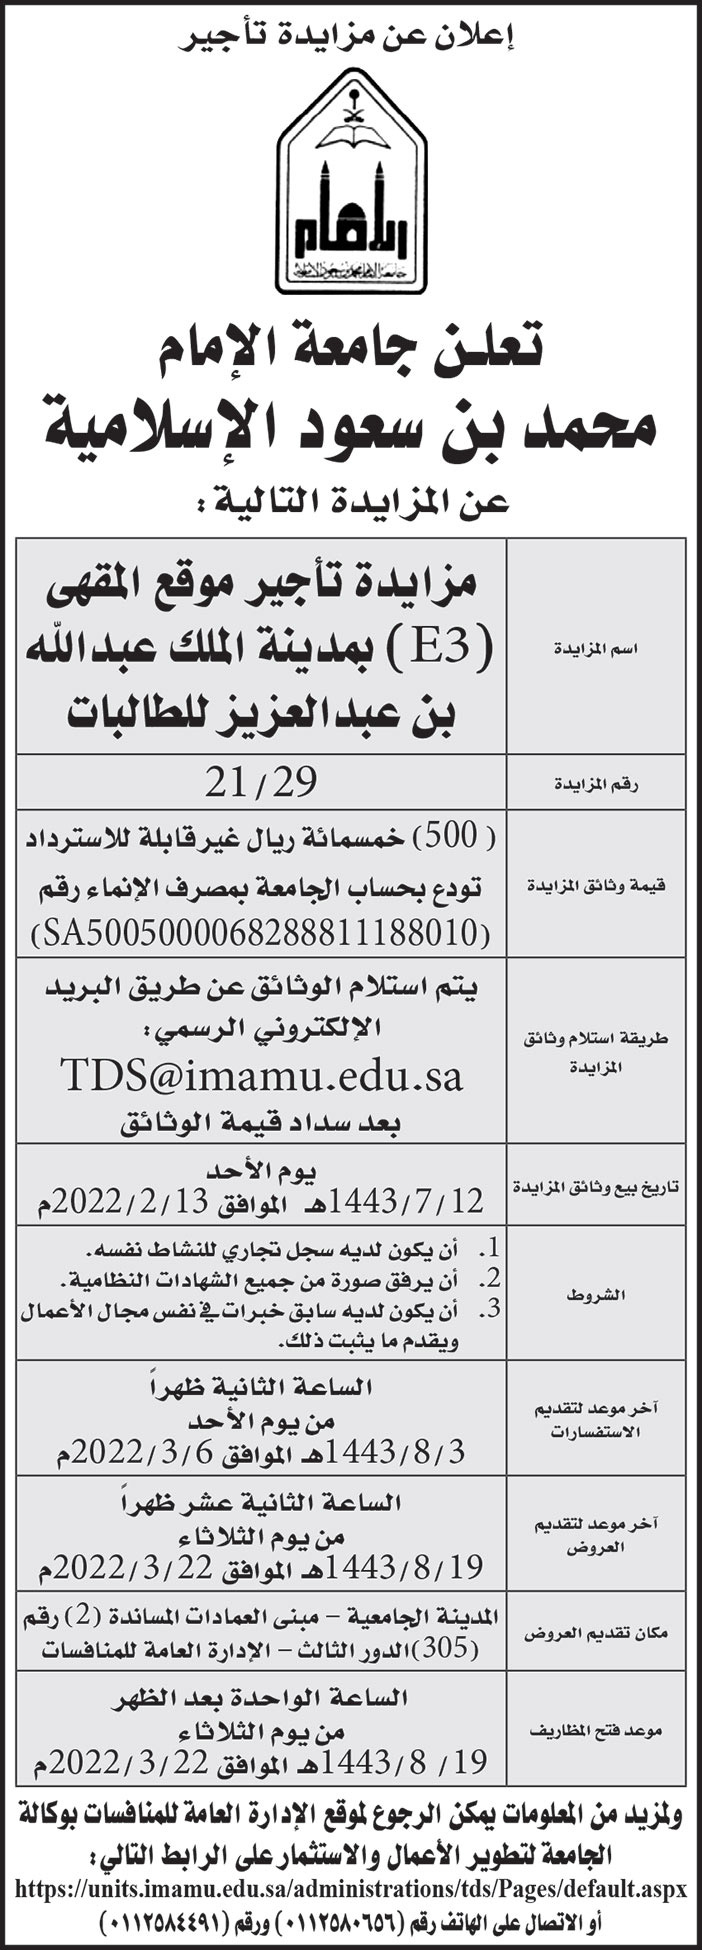 جامعة الإمام محمد بن سعود الإسلامية تطرح مزايدة لتأجير موقع المقهى (E3) بمدينة الملك عبدالله بن عبدالعزيز للطالبات 